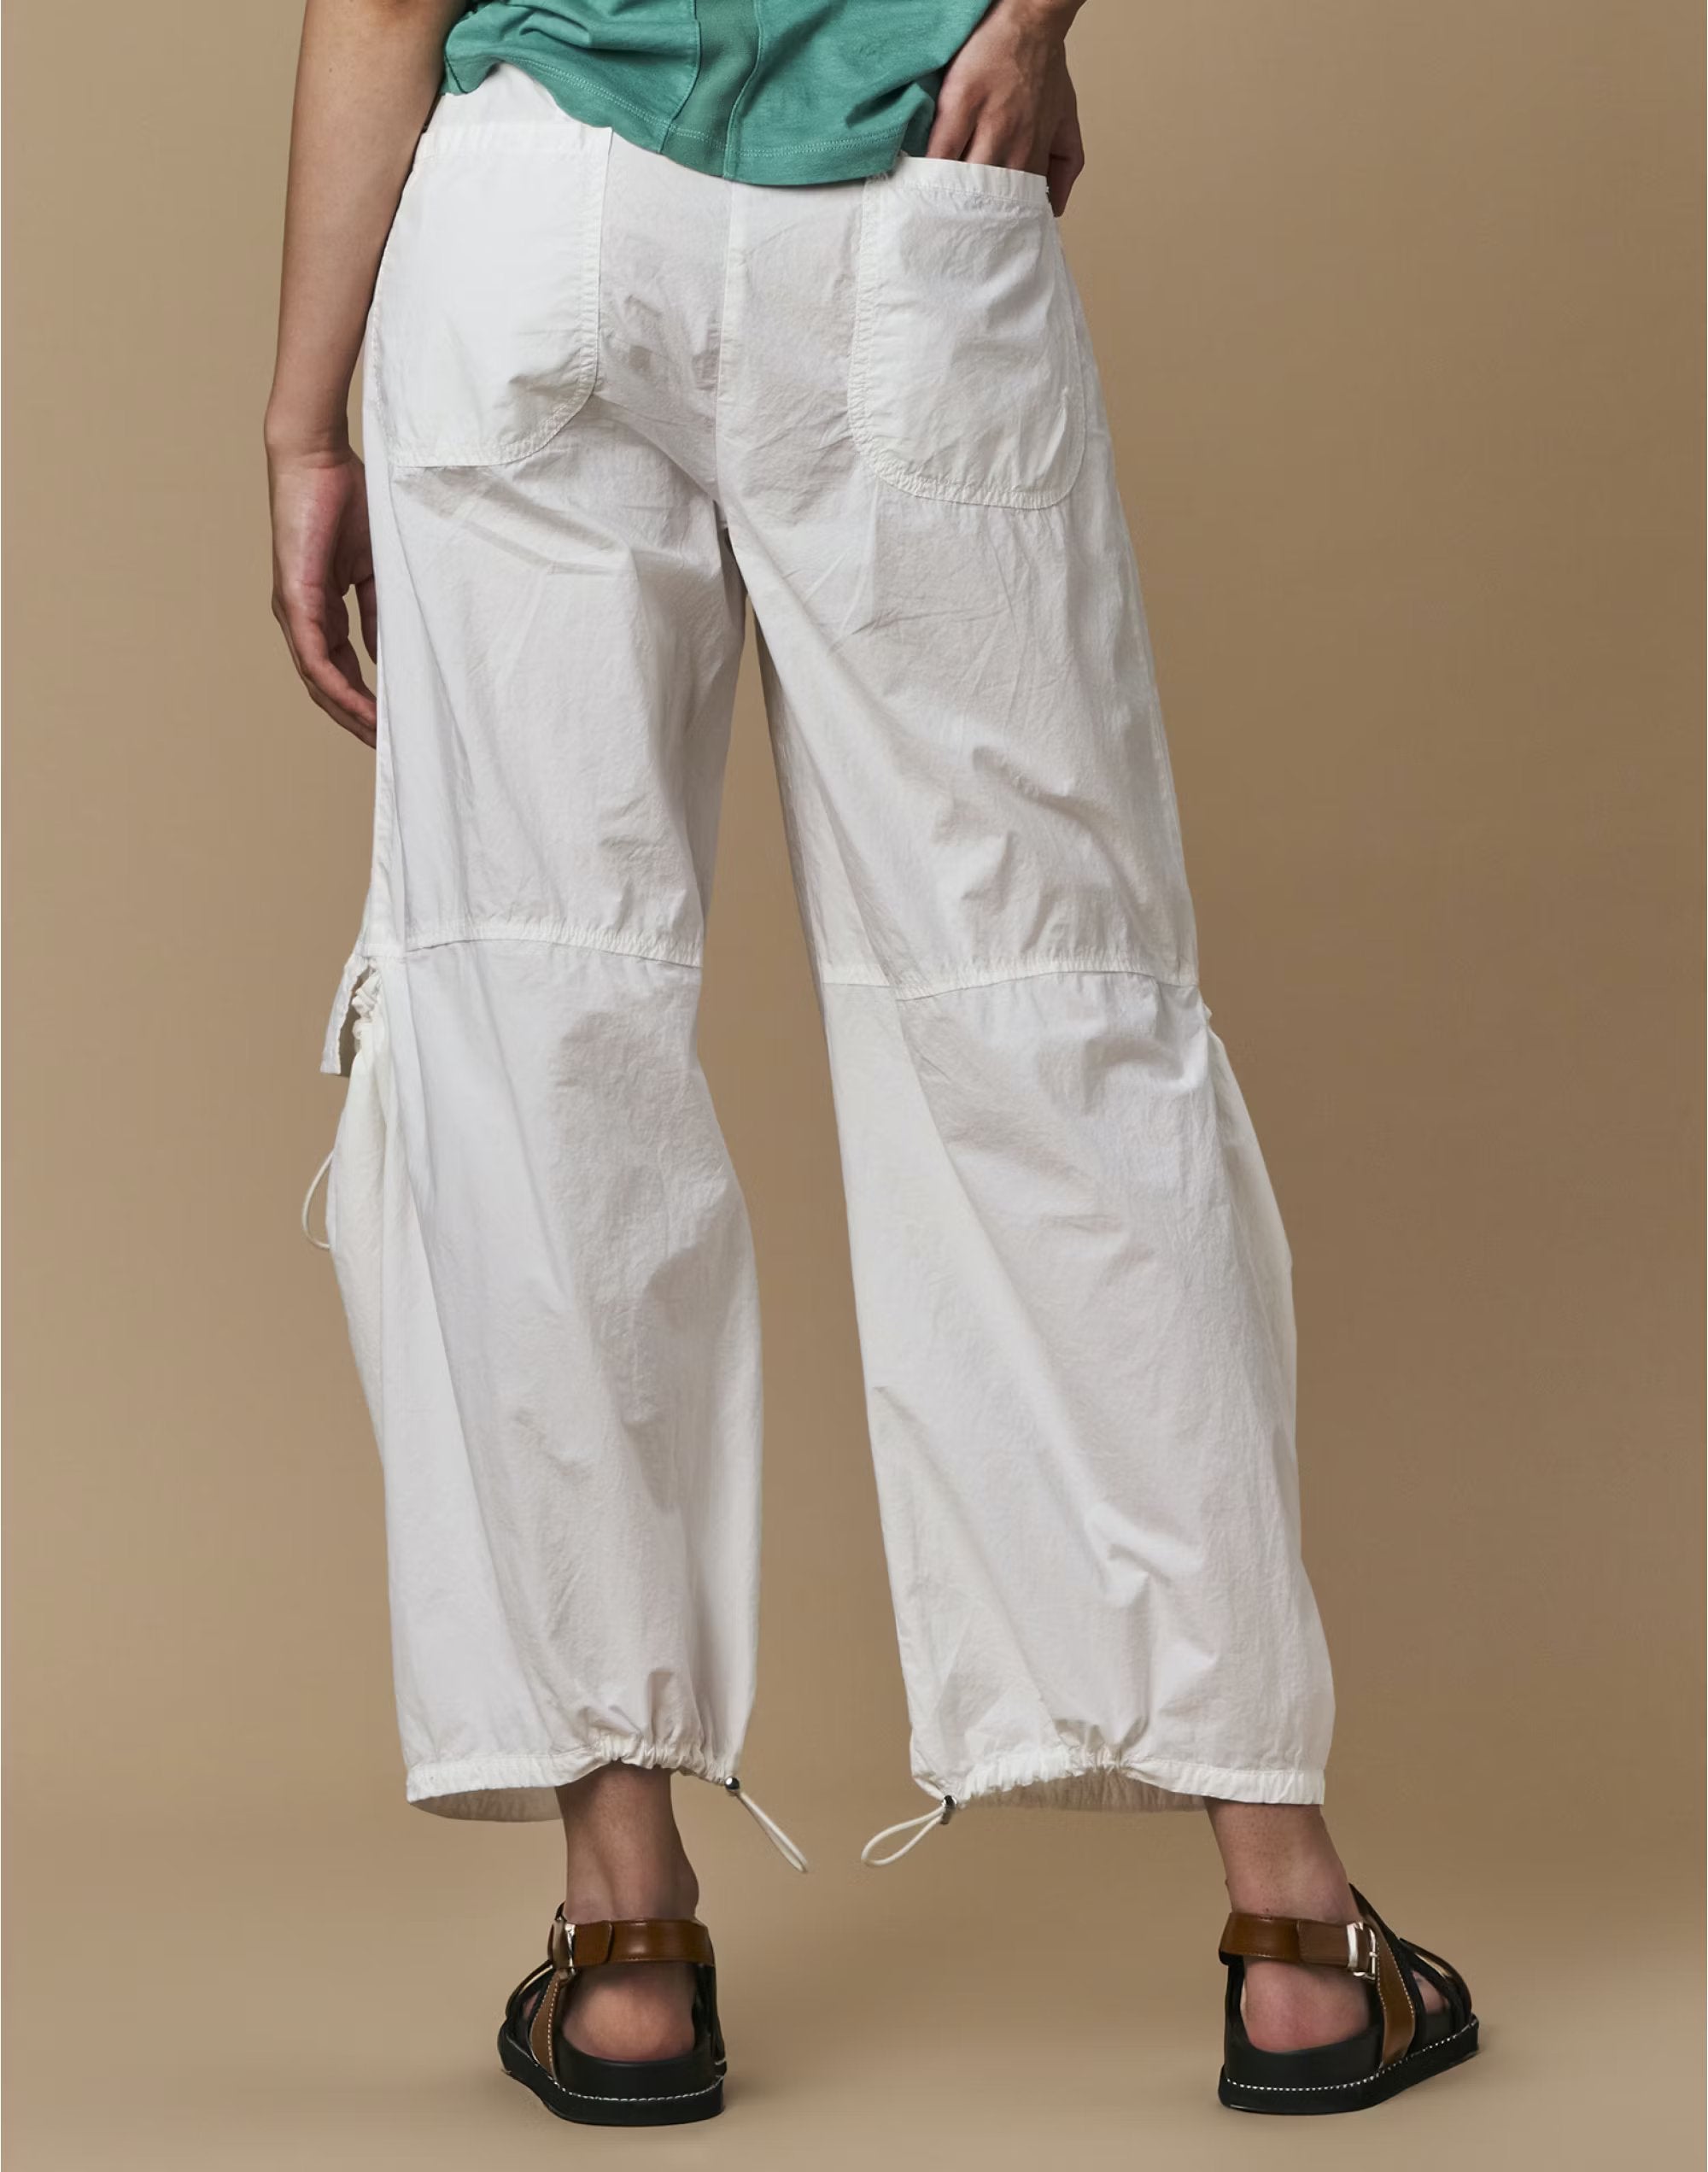 Inventive white trousers